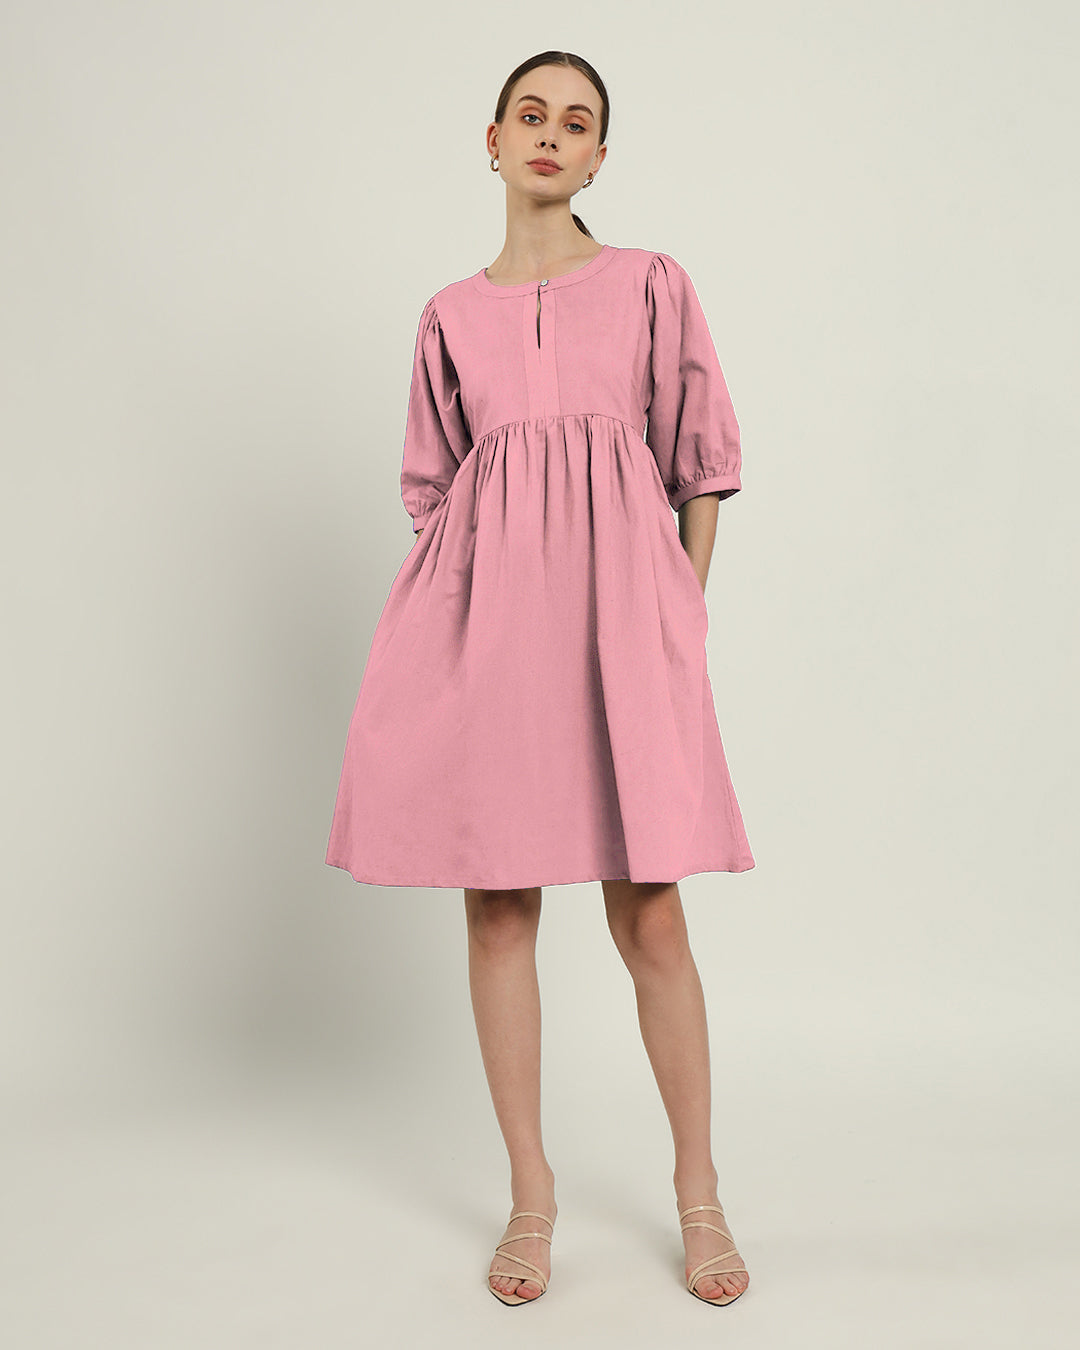 The Aira Fondant Pink Cotton Dress